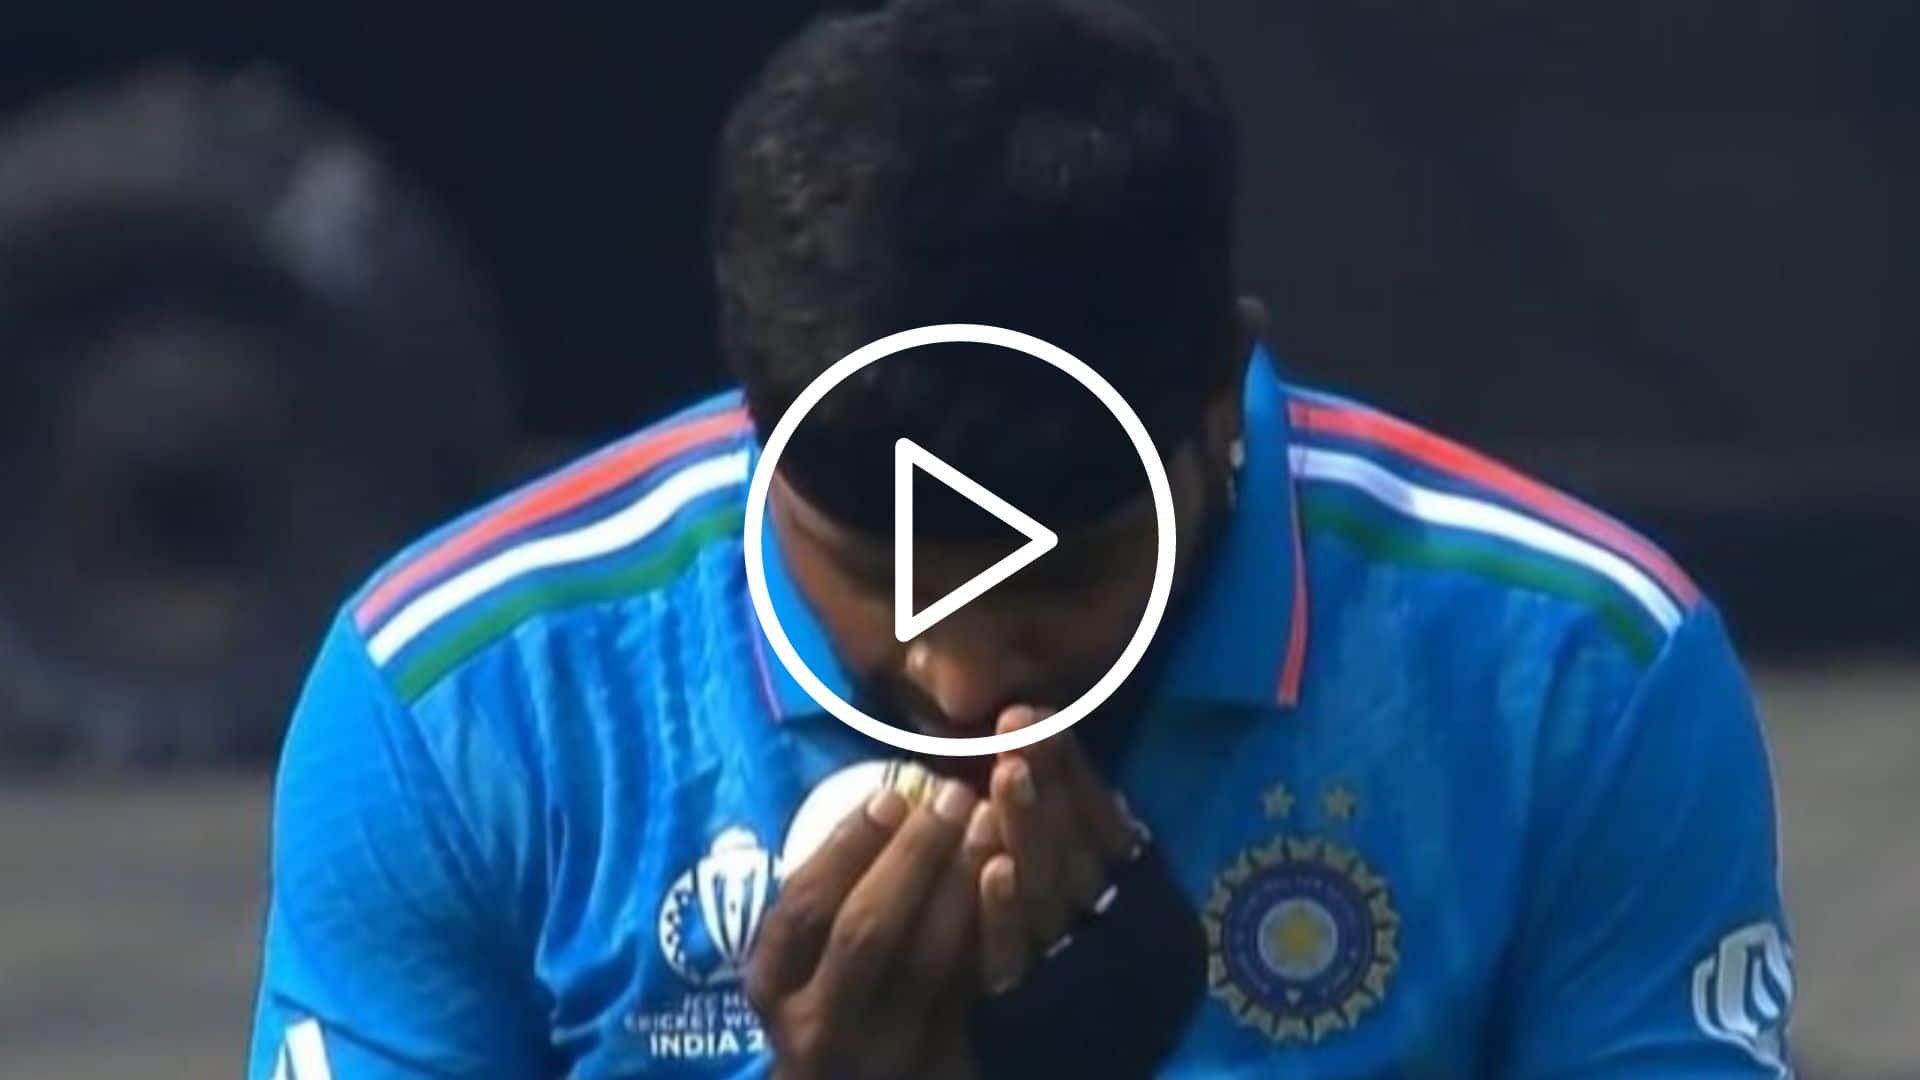 [Watch] 'Let's Do It'- Hardik Pandya's Fiery Talk to Ball Before Clinching Imam's Wicket